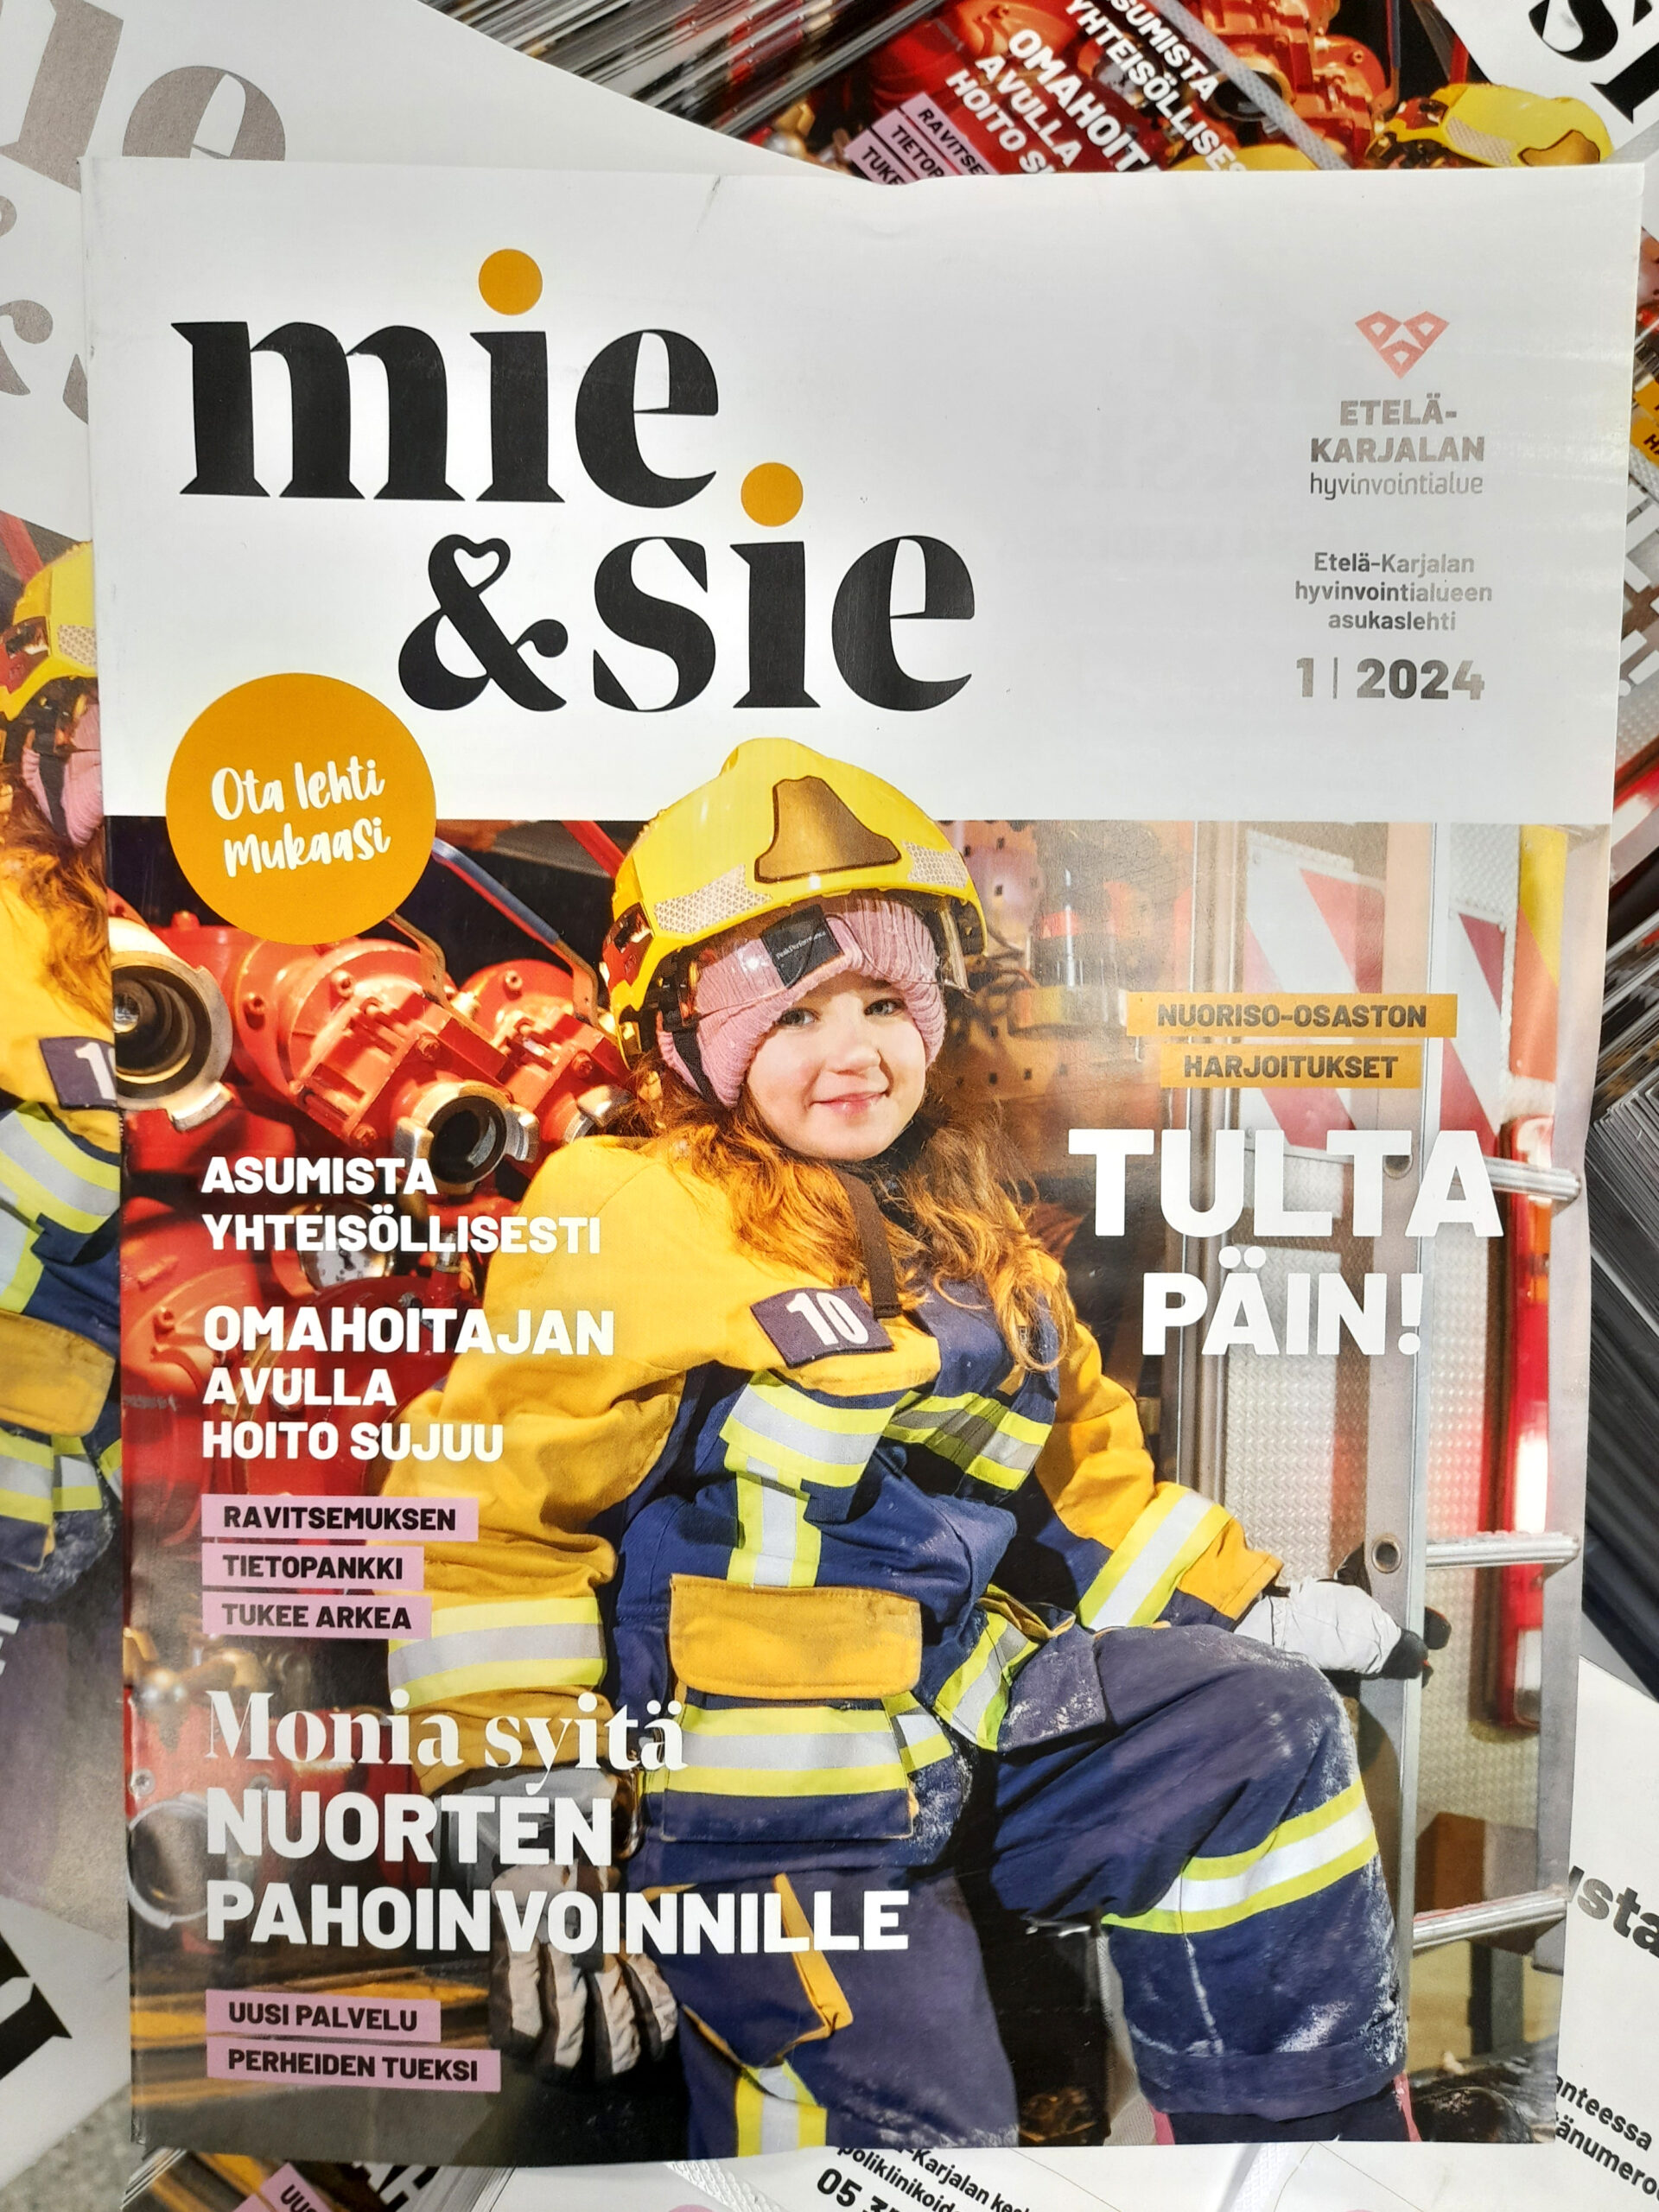 Kuvassa Mie&Sie-lehden kansikuva, jossa palomiehen pukuun pukeutunut hymyilevä tyttö istuu paloauton oviaukossa ja katsoo kameraan. Kuvassa on paljon oranssia, keltaista ja tummansinistä väriä.